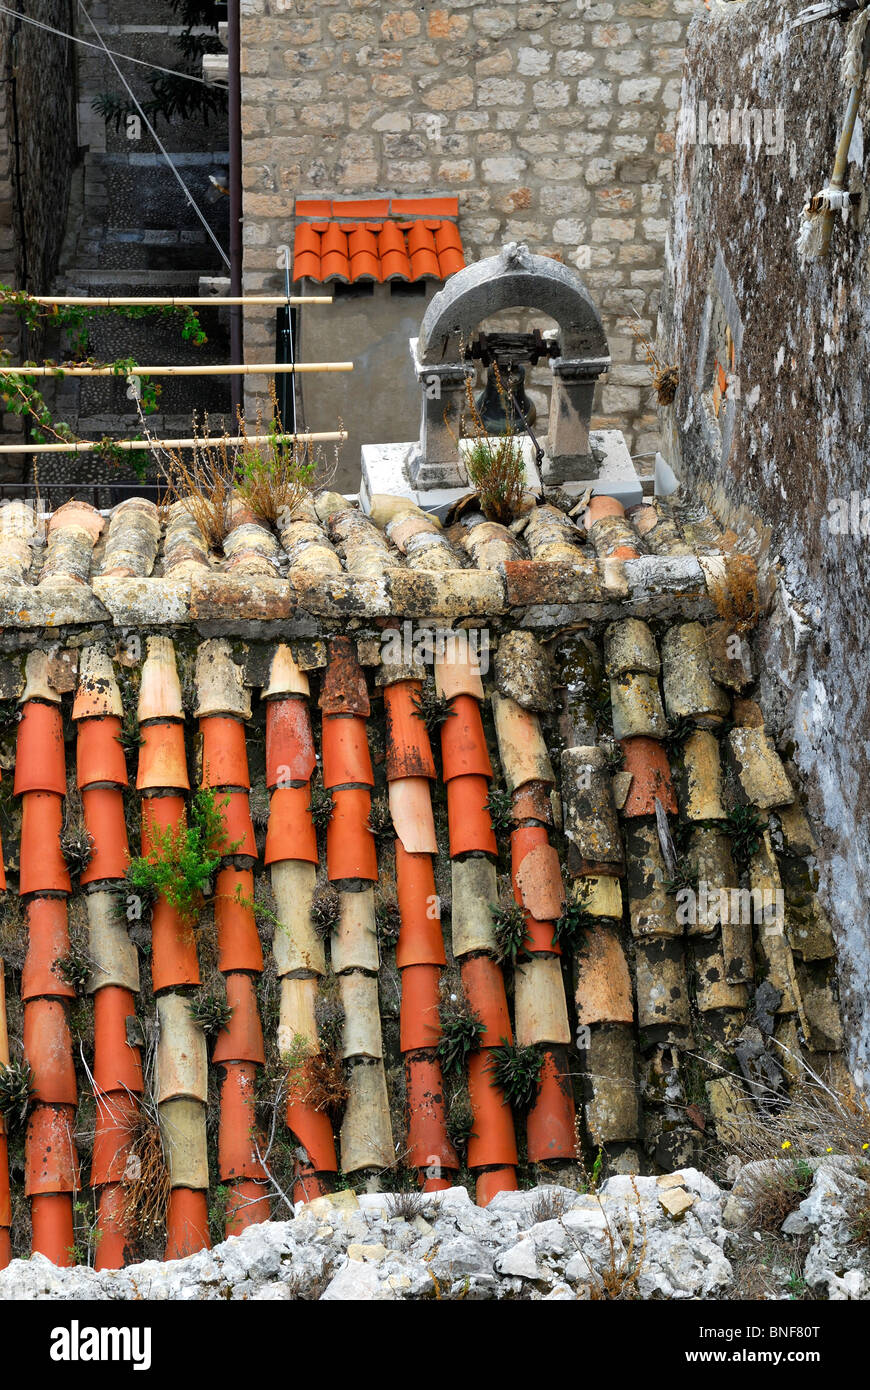 Mélange d'ancien et de nouveau des tuiles du toit. Dubrovnik, Croatie Banque D'Images